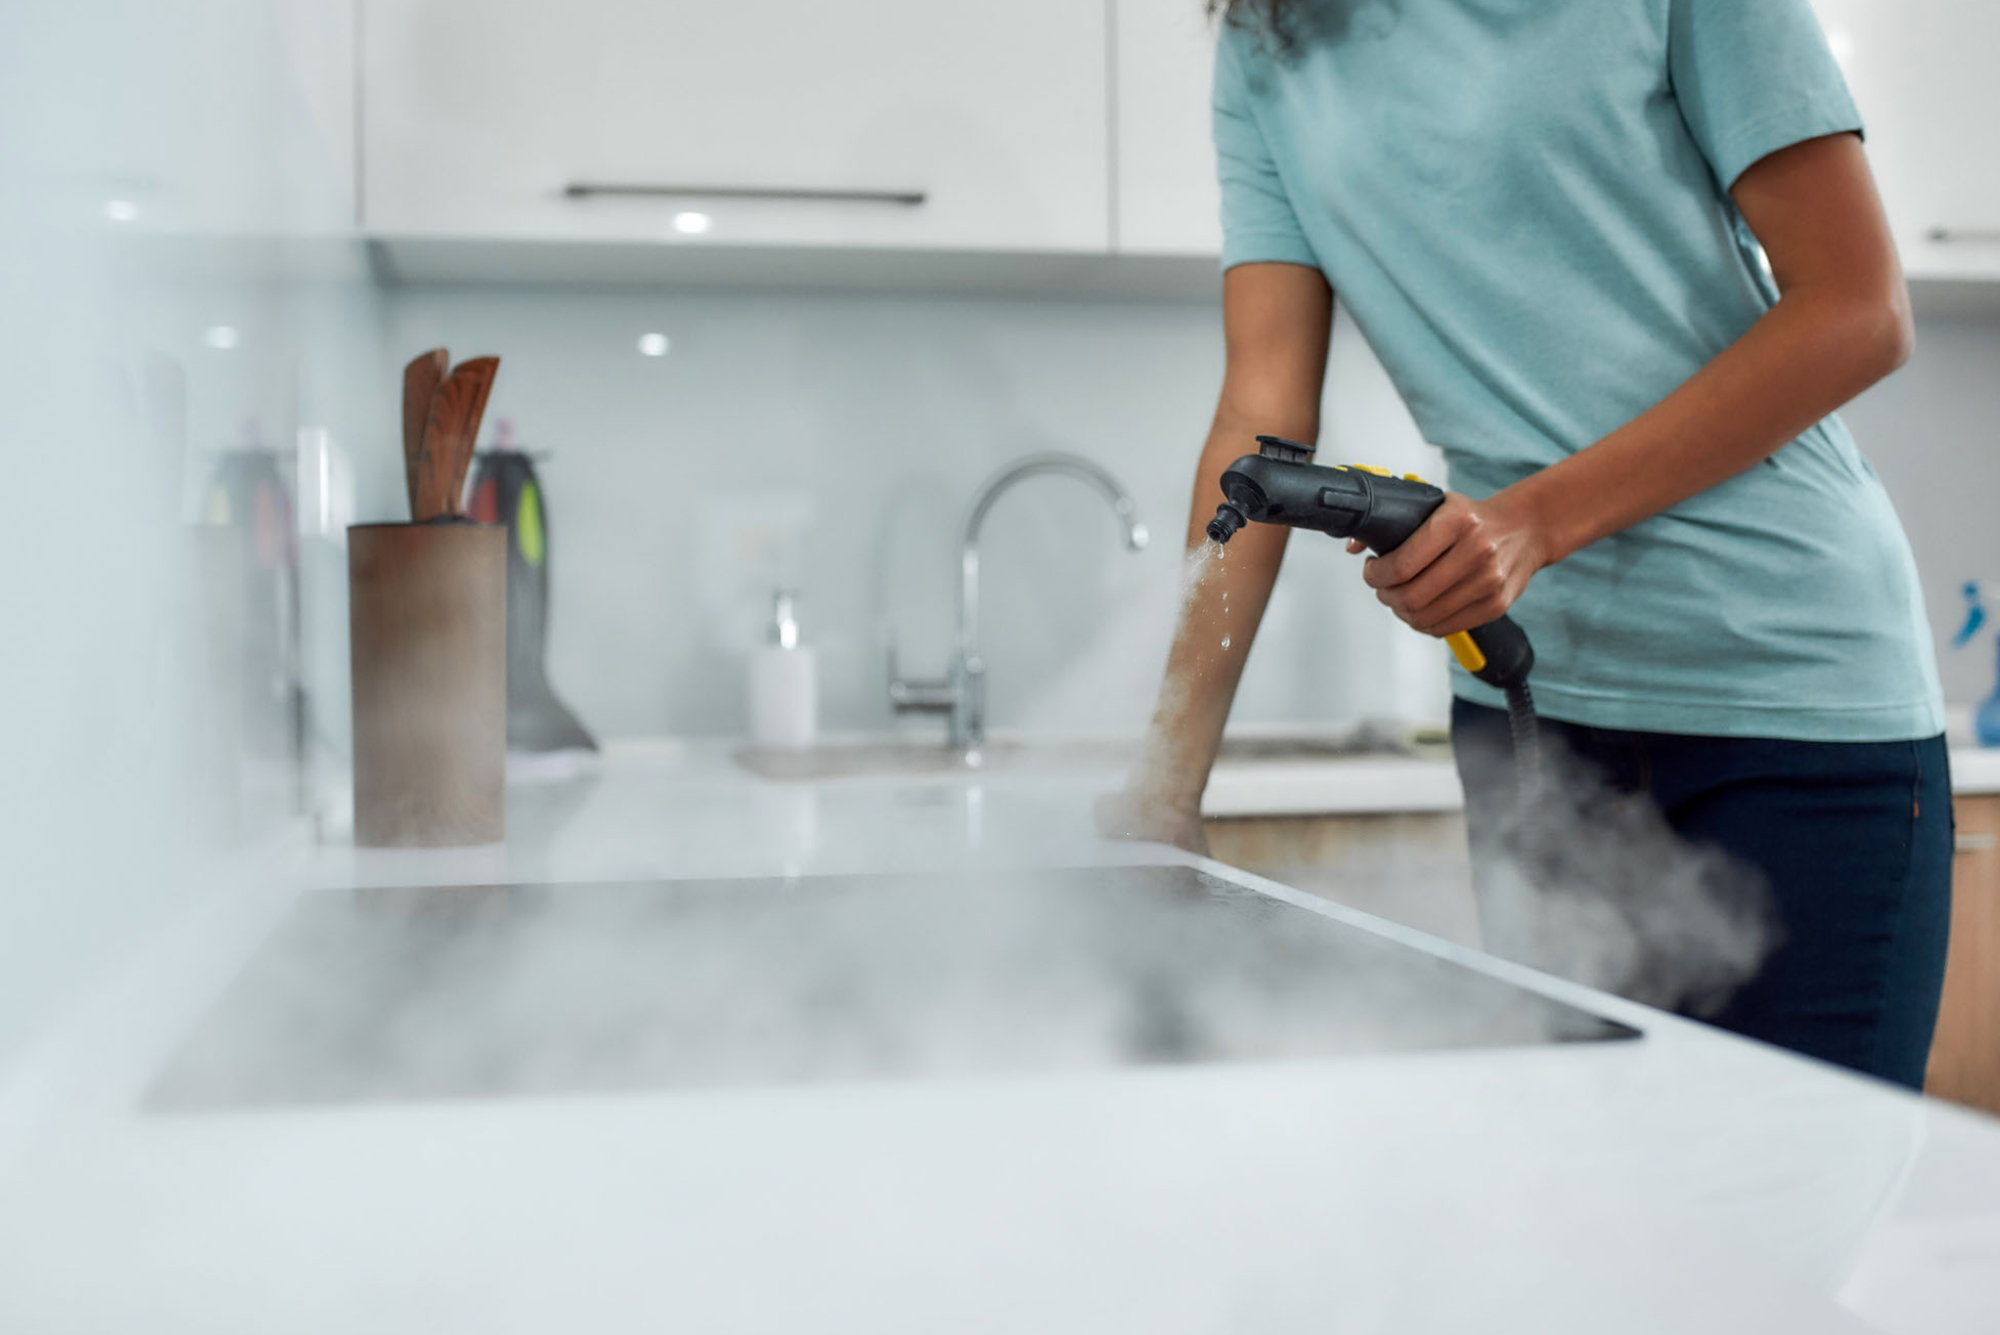 Eksperttips for damprengjøring hjemme for å holde huset ditt rent og friskt